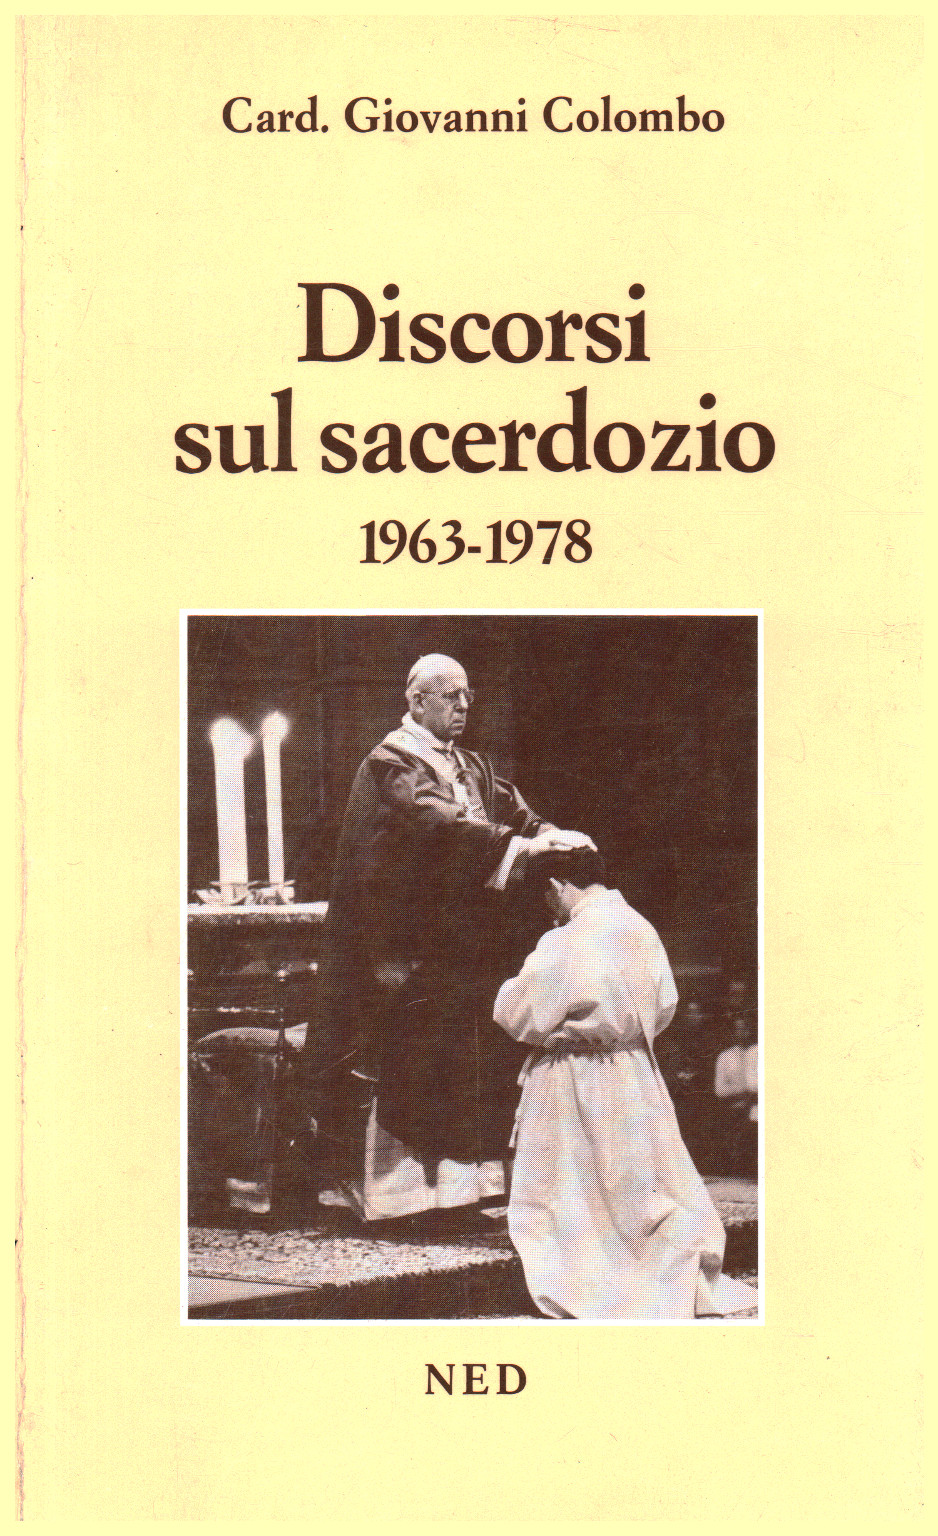 Discorsi sul sacerdozio 1963-1978, s.a.